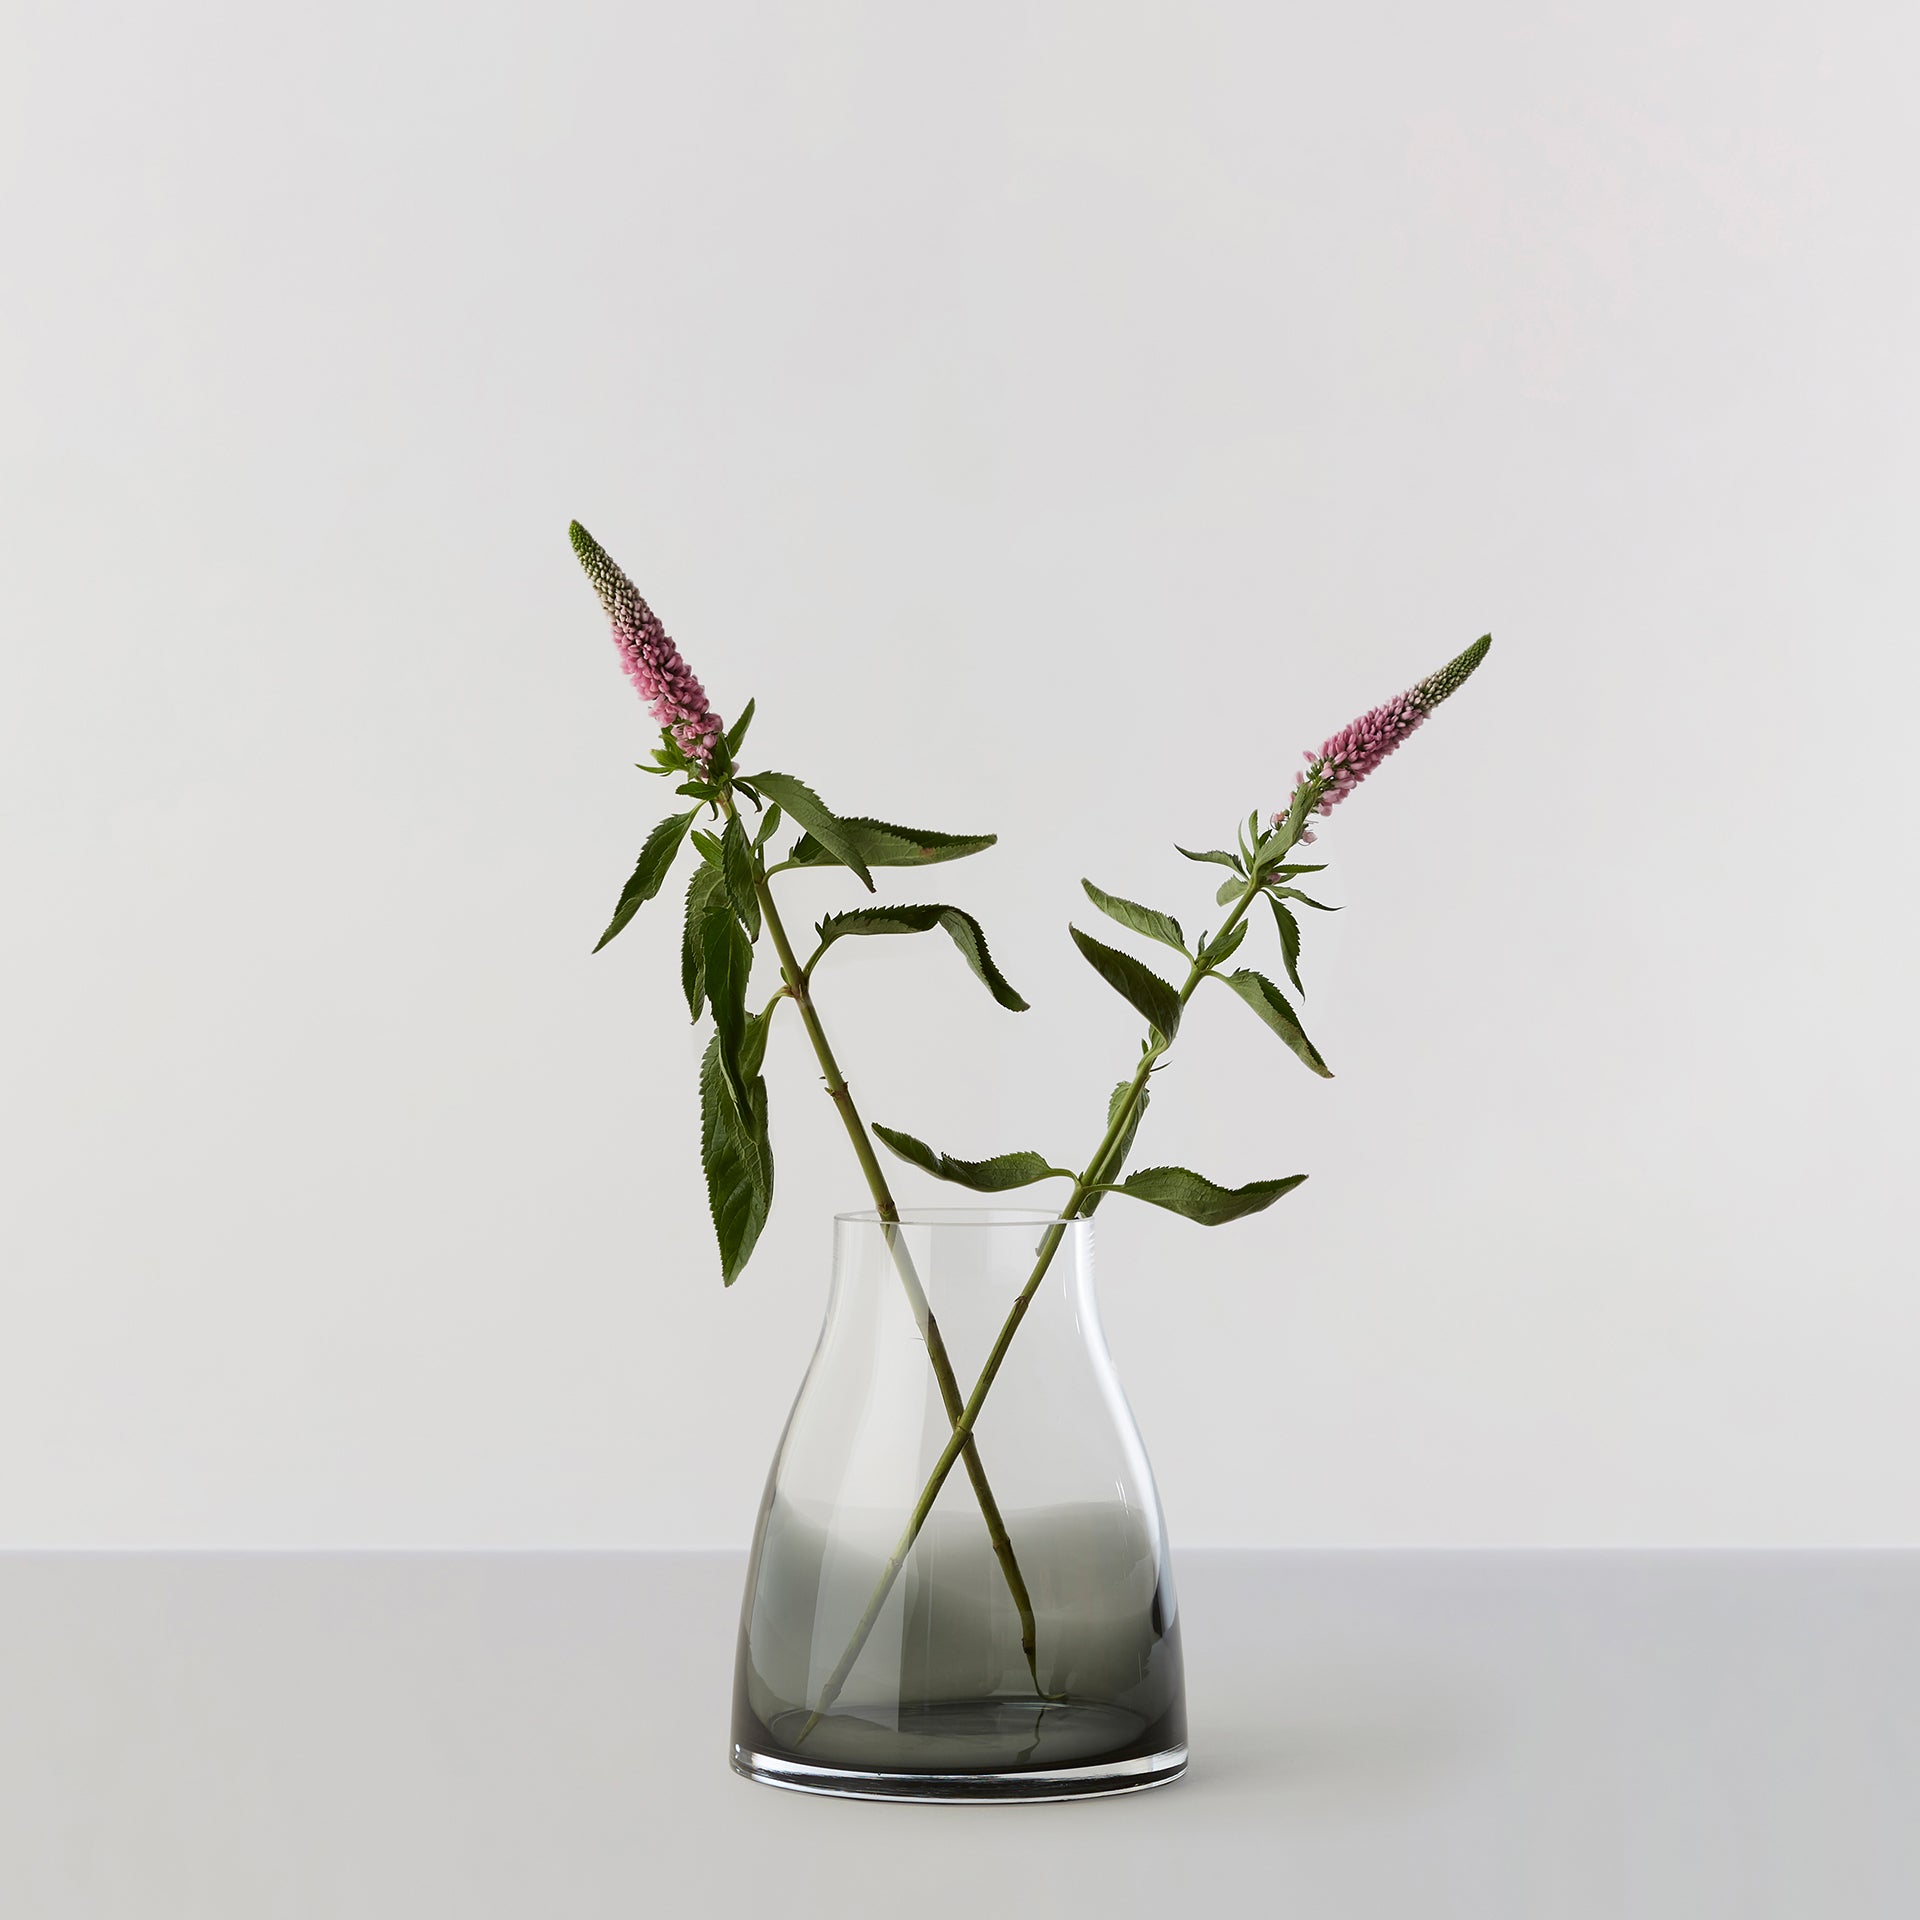 Billede af Flower Vase no. 2 - Smoked grey